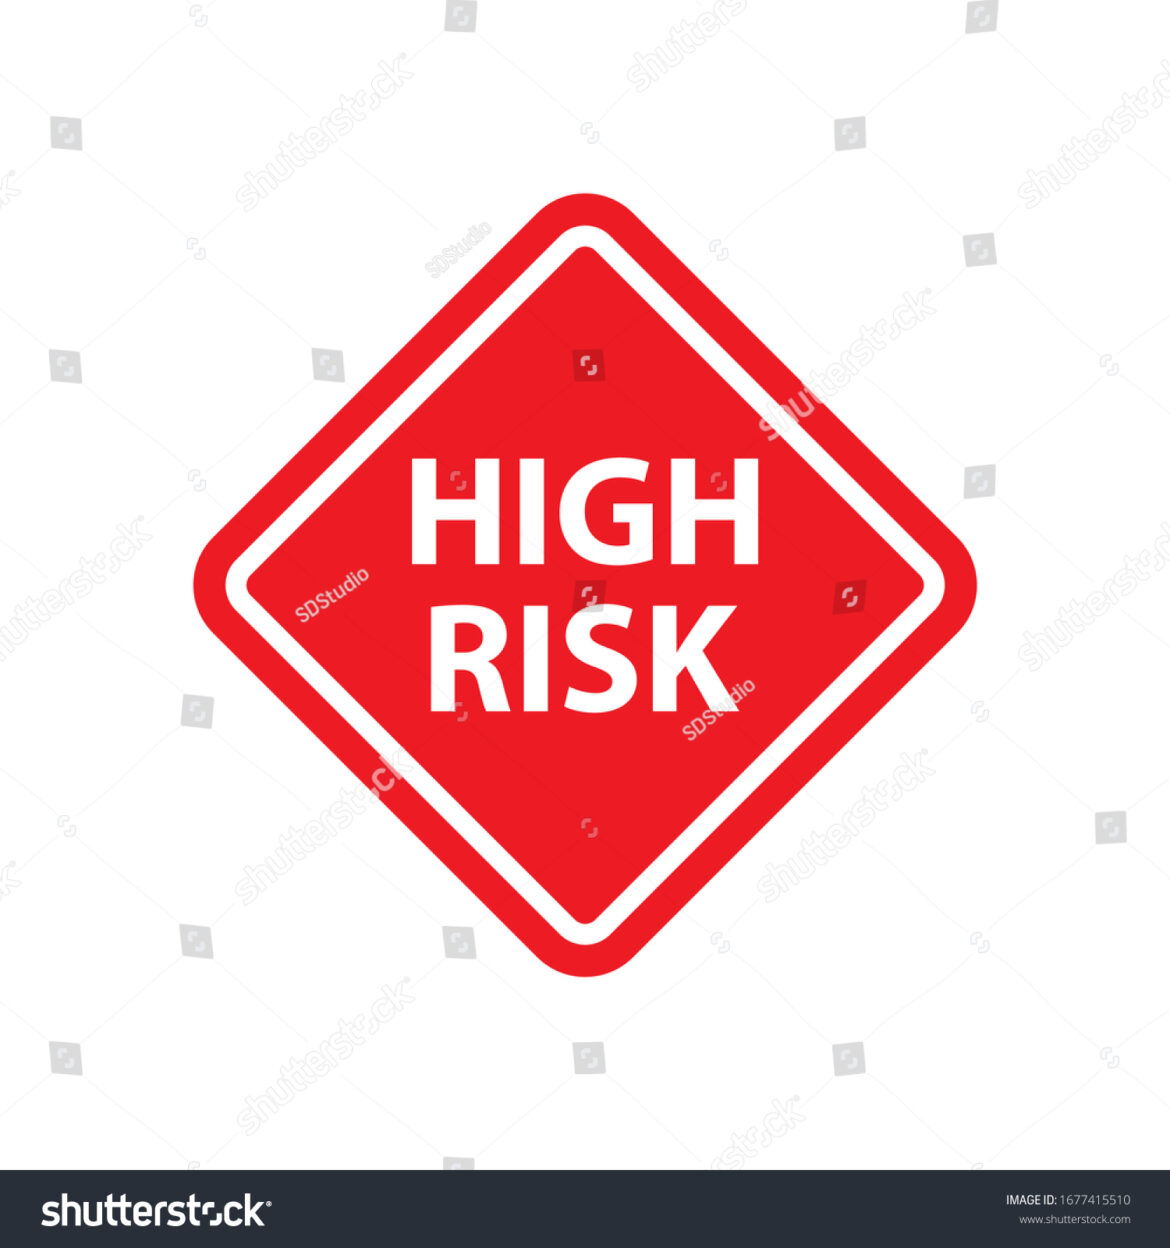 high risk